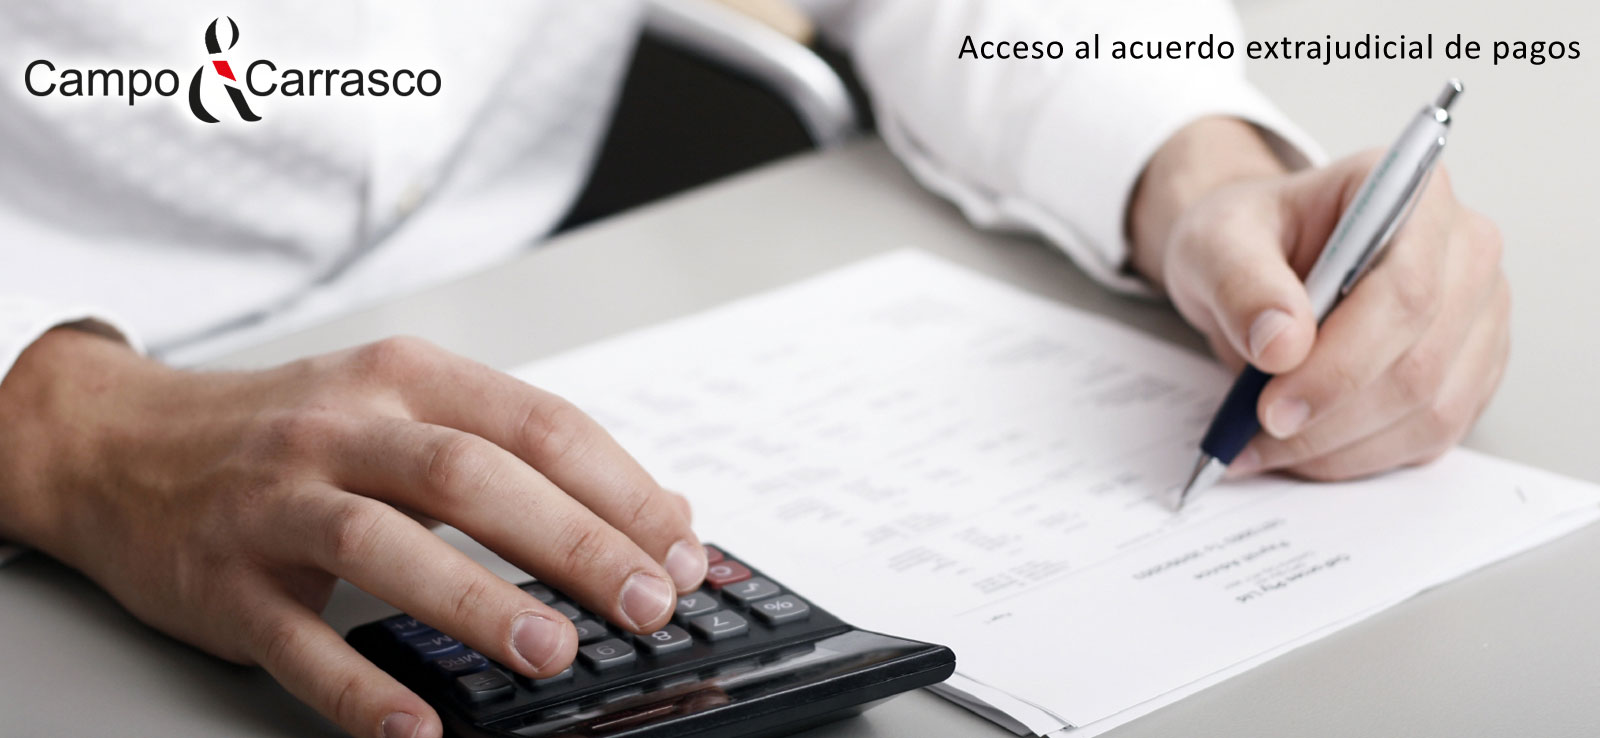 Formulario para facilitar el acceso al acuerdo extrajudicial de pagos -  Campo & Carrasco